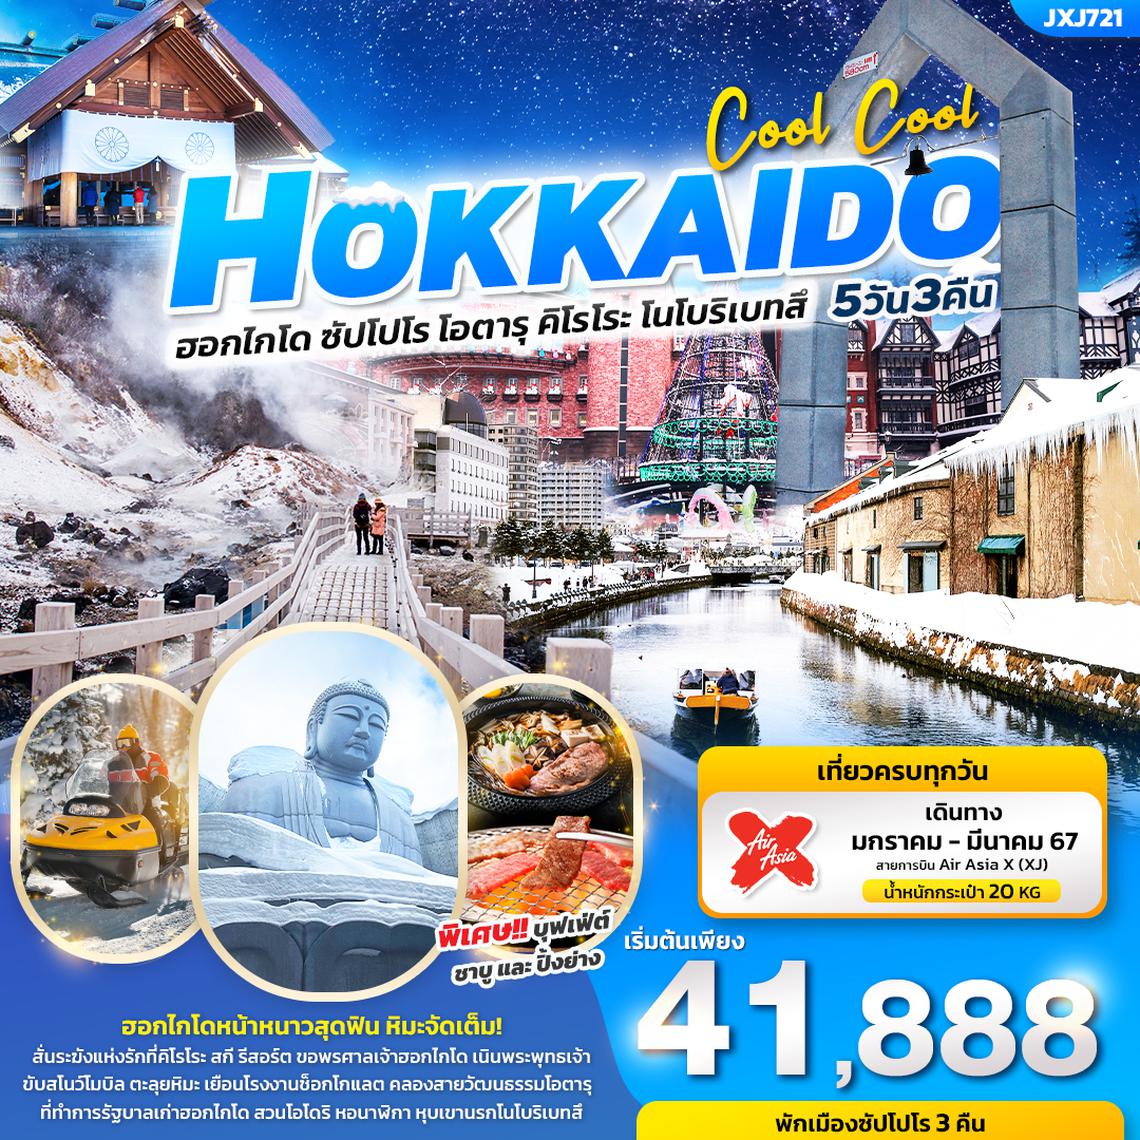 ทัวร์ญี่ปุ่น COOL COOL HOKKAIDO ฮอกไกโด ซัปโปโร โอตารุ คิโรโระ โนโบริเบทสึ 5 วัน 3 คืน